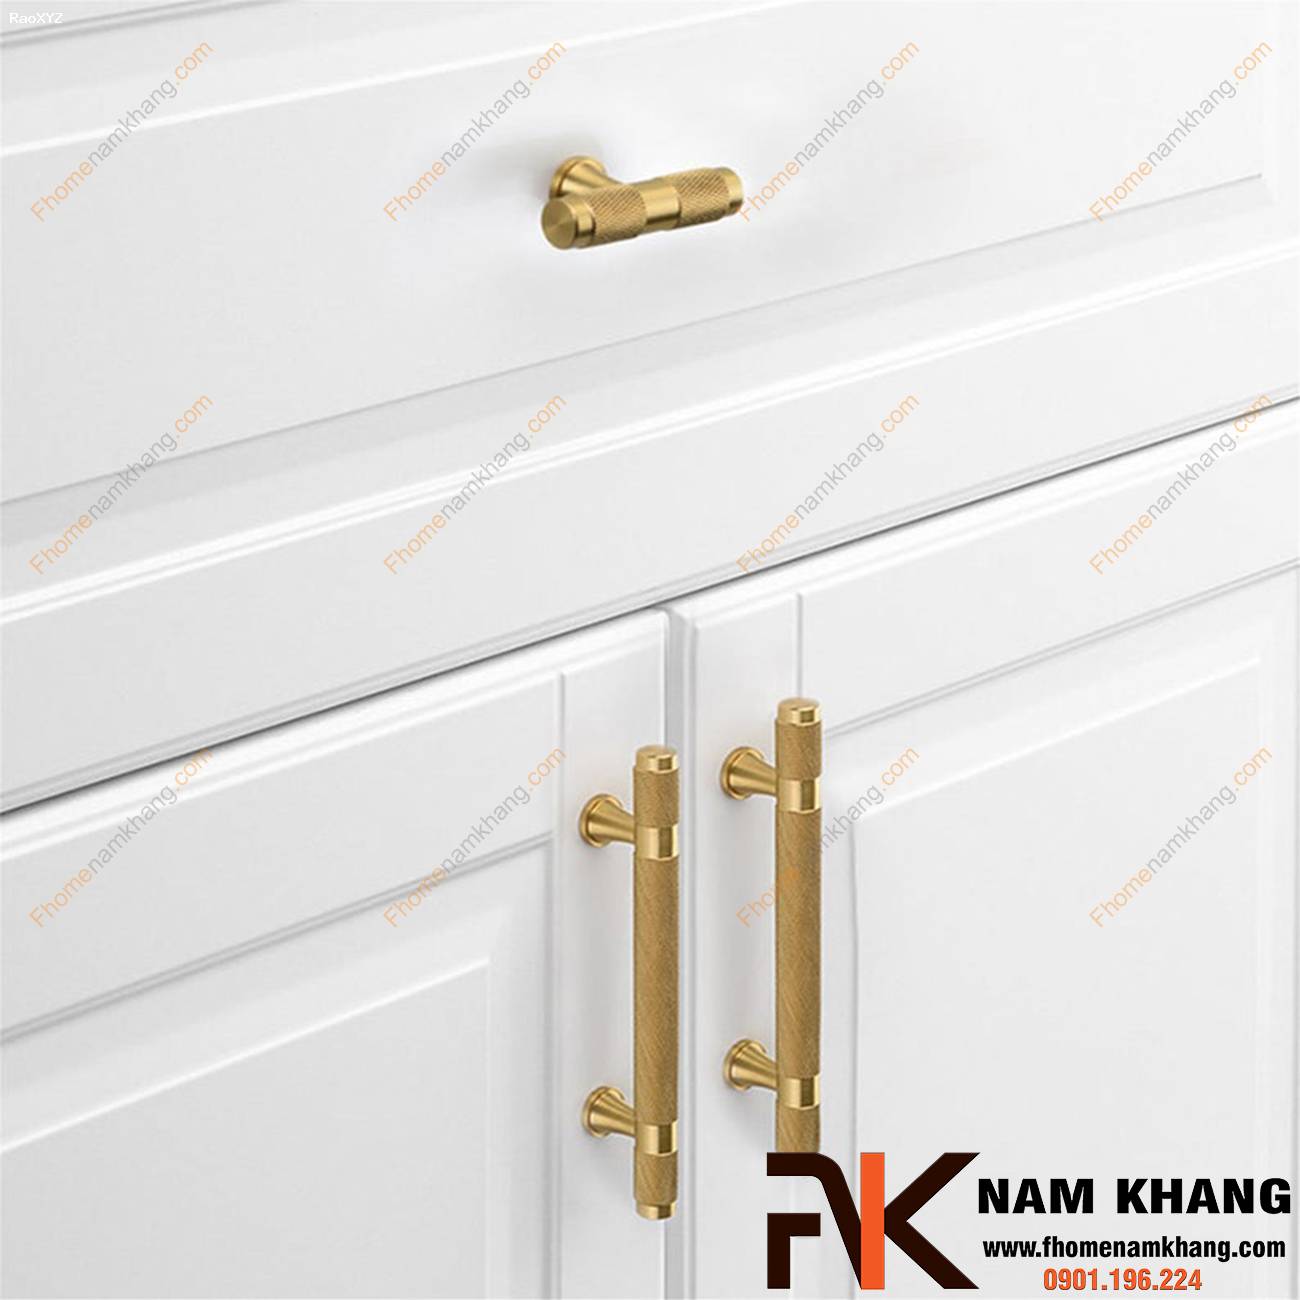 Tay nắm cửa tủ cổ điển cao cấp NK207S | F-Home NamKhang